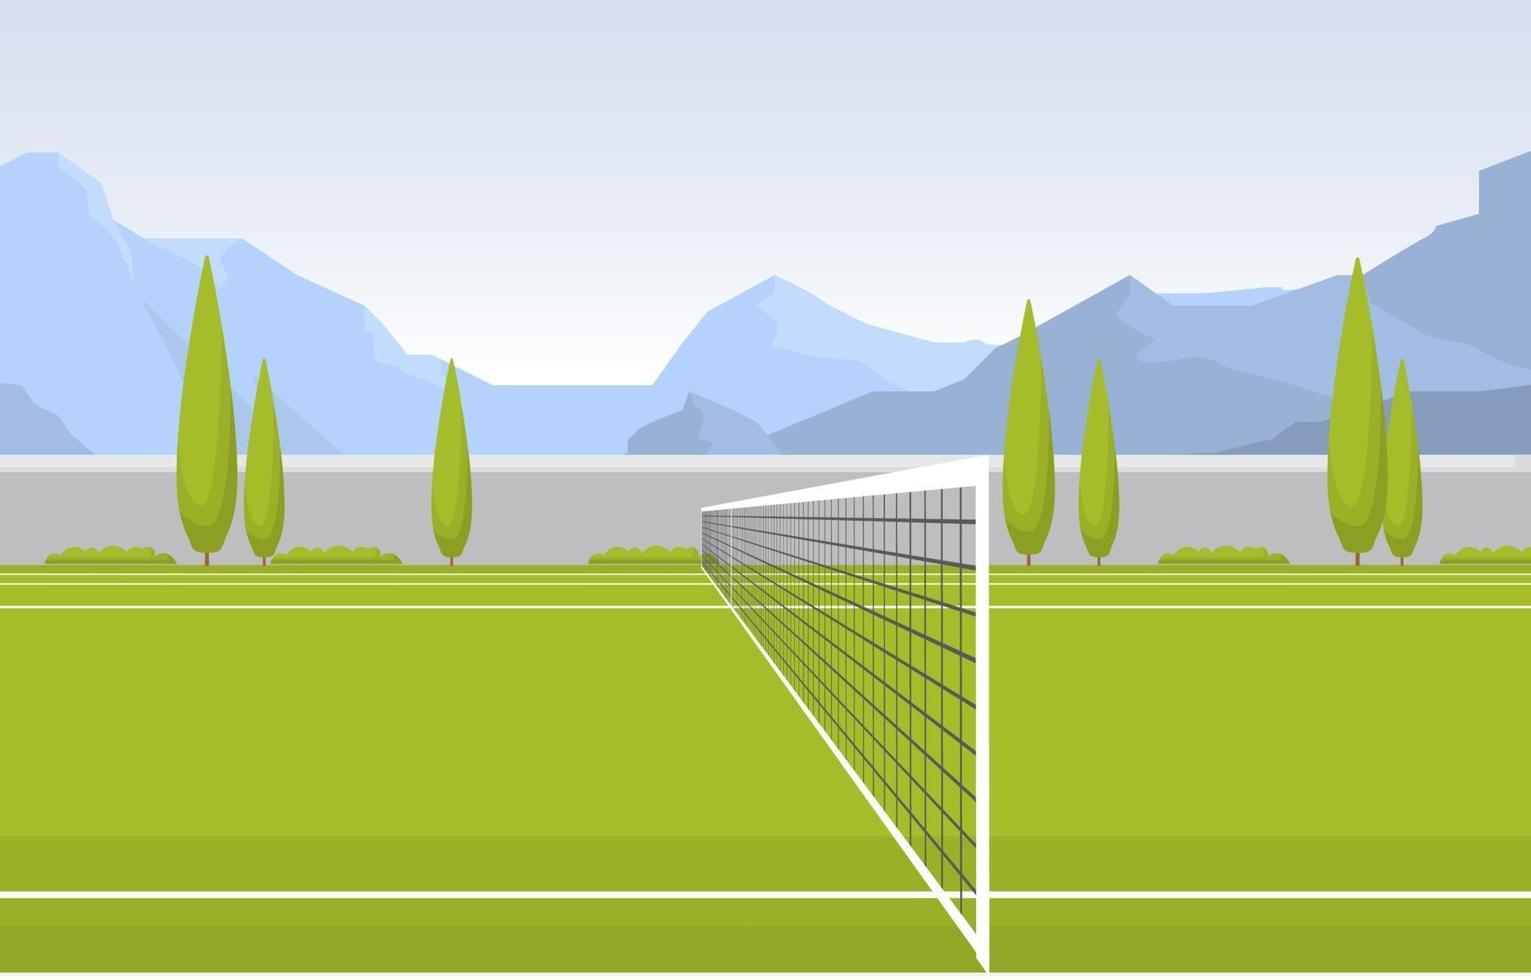 cancha de tenis al aire libre rodeada de árboles y montañas vector